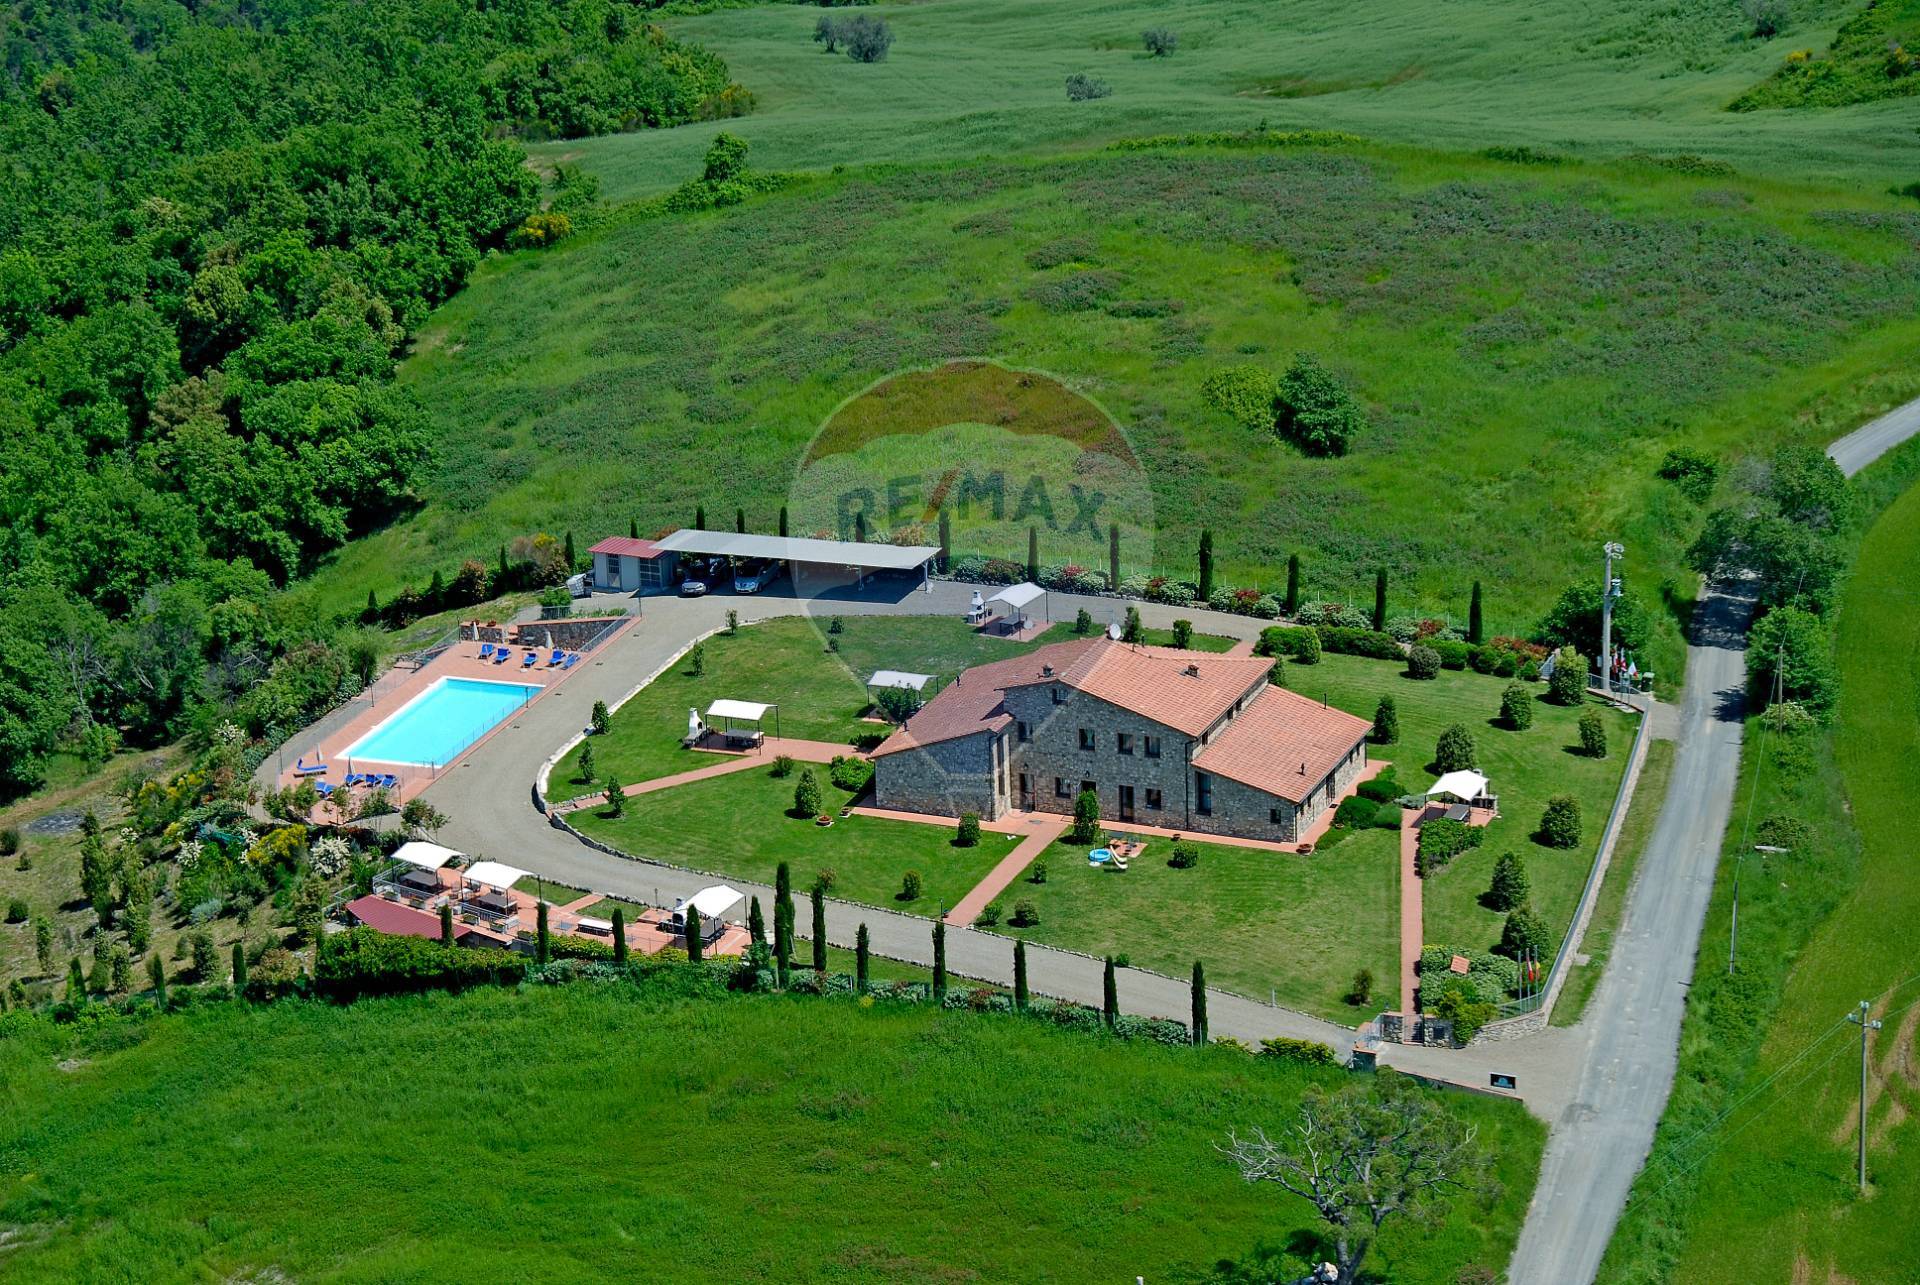 Immobile Turistico in vendita a Volterra, 23 locali, prezzo € 1.150.000 | PortaleAgenzieImmobiliari.it